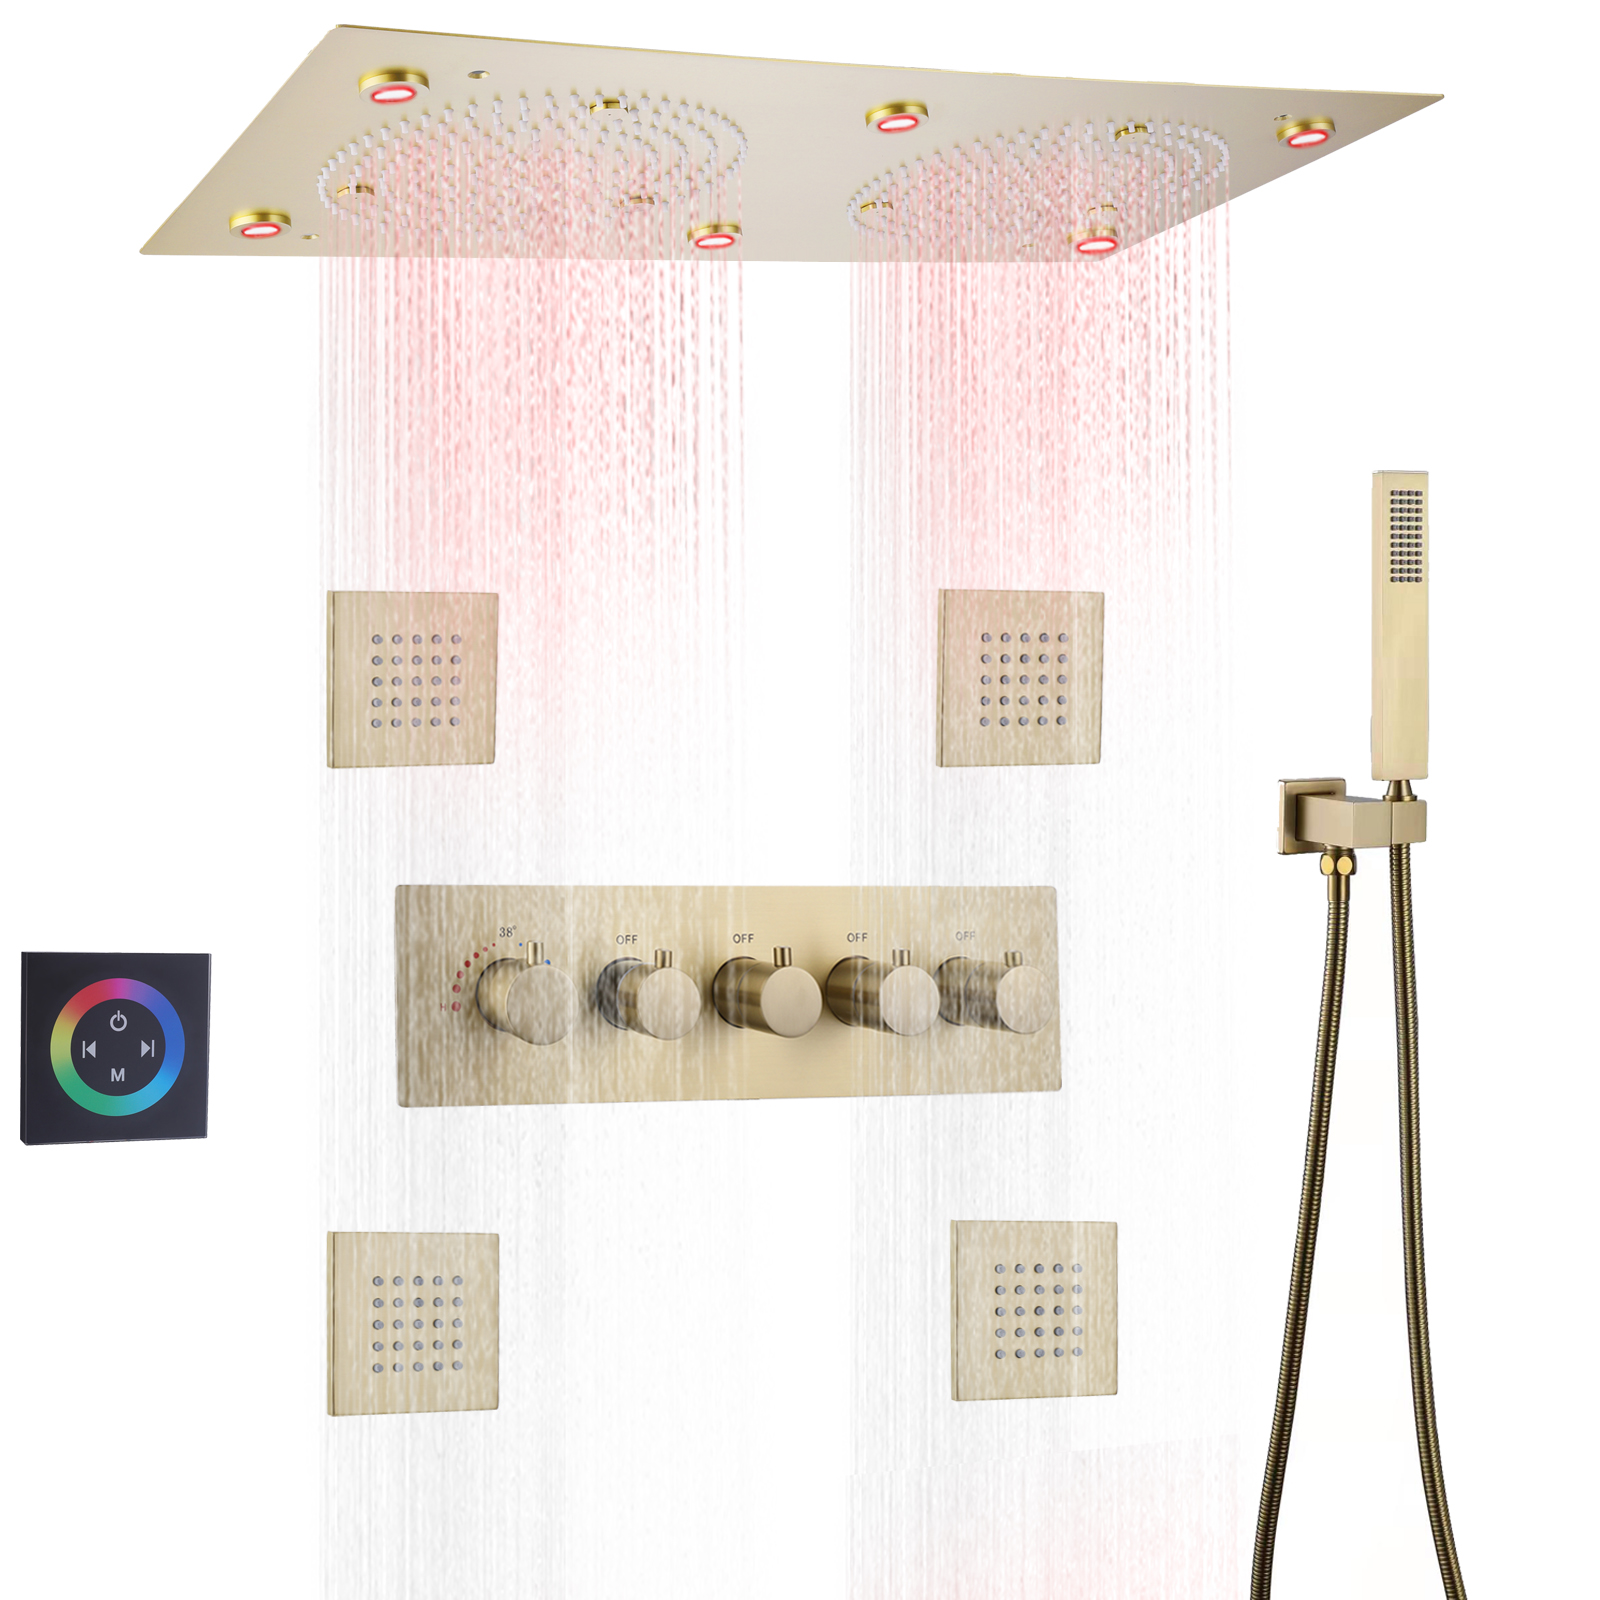 نحى الذهب ثرموستاتي دش رئيس الأمطار LED الحمام حمام دش صنبور مجموعة مع خرطوم المحمولة